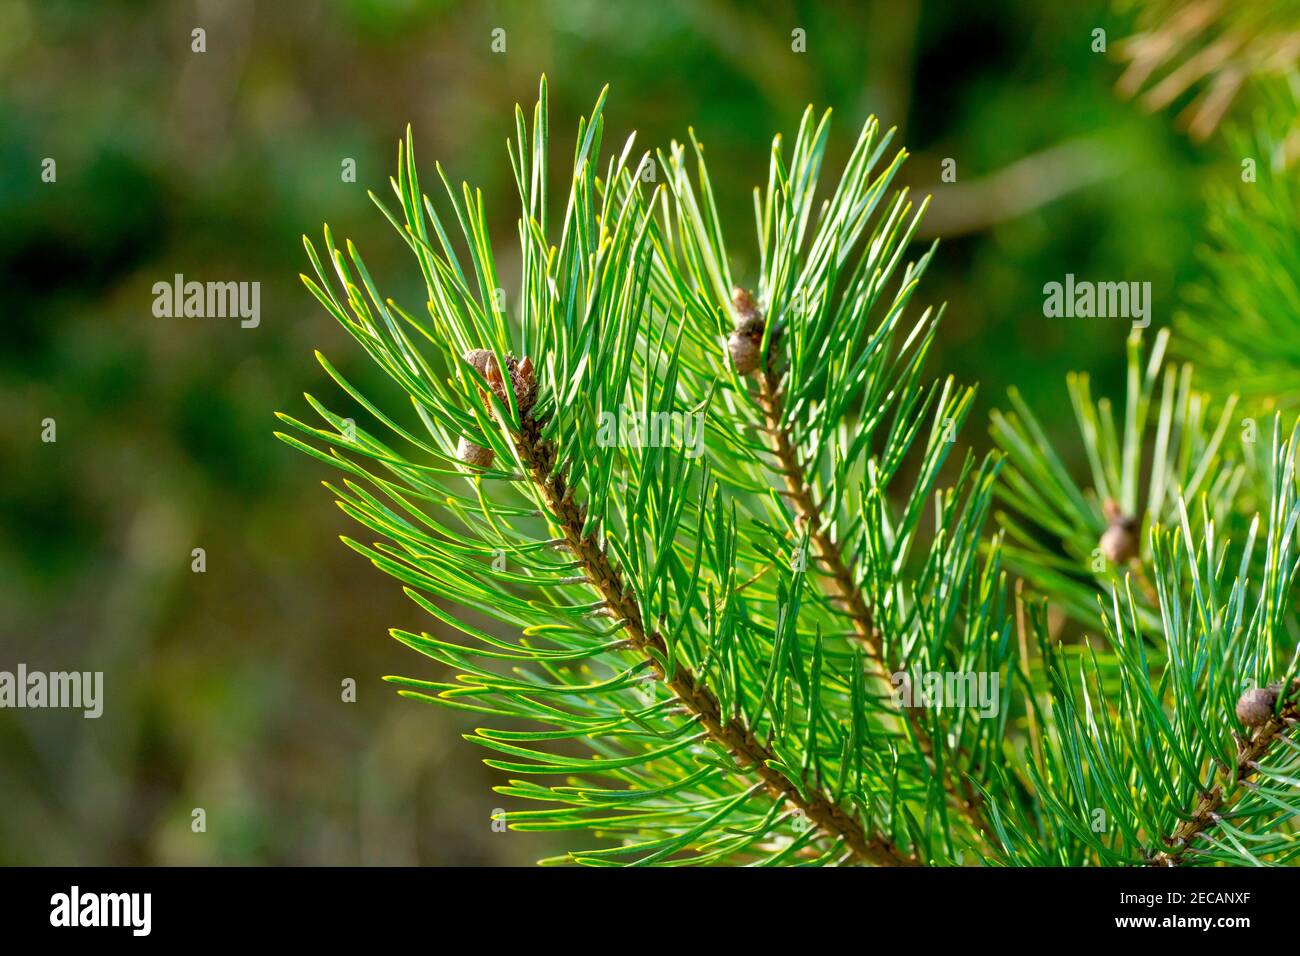 PIN écossais (pinus sylvestris), gros plan montrant l'extrémité d'une branche avec de jeunes cônes immatures et des aiguilles vertes rétroéclairées. Banque D'Images